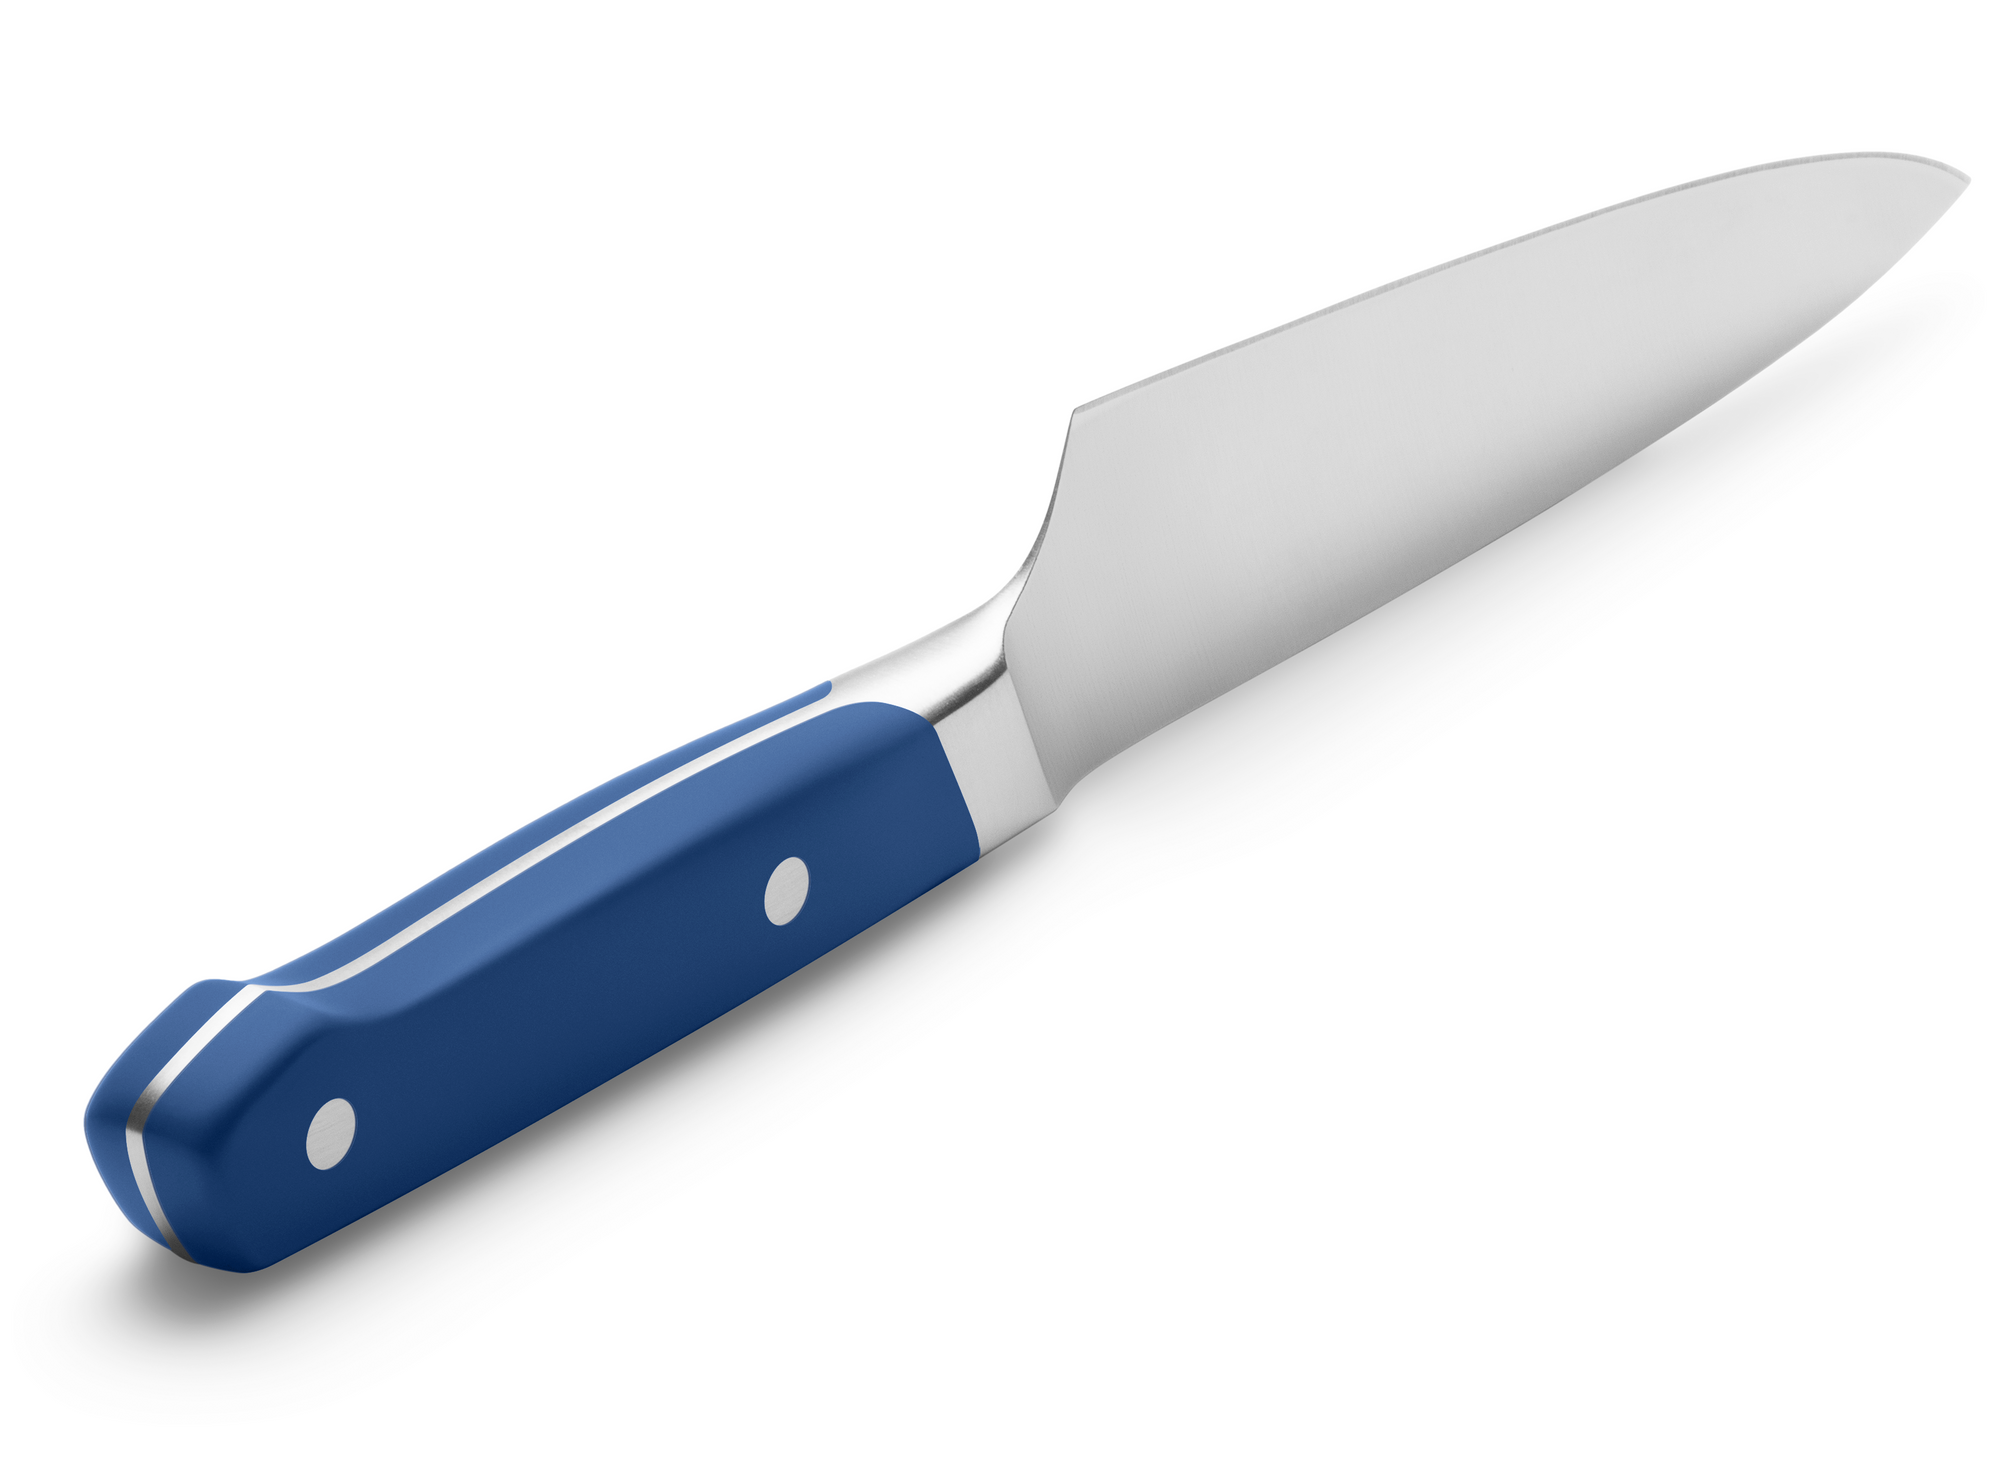 Misen 5 Serrated Knife